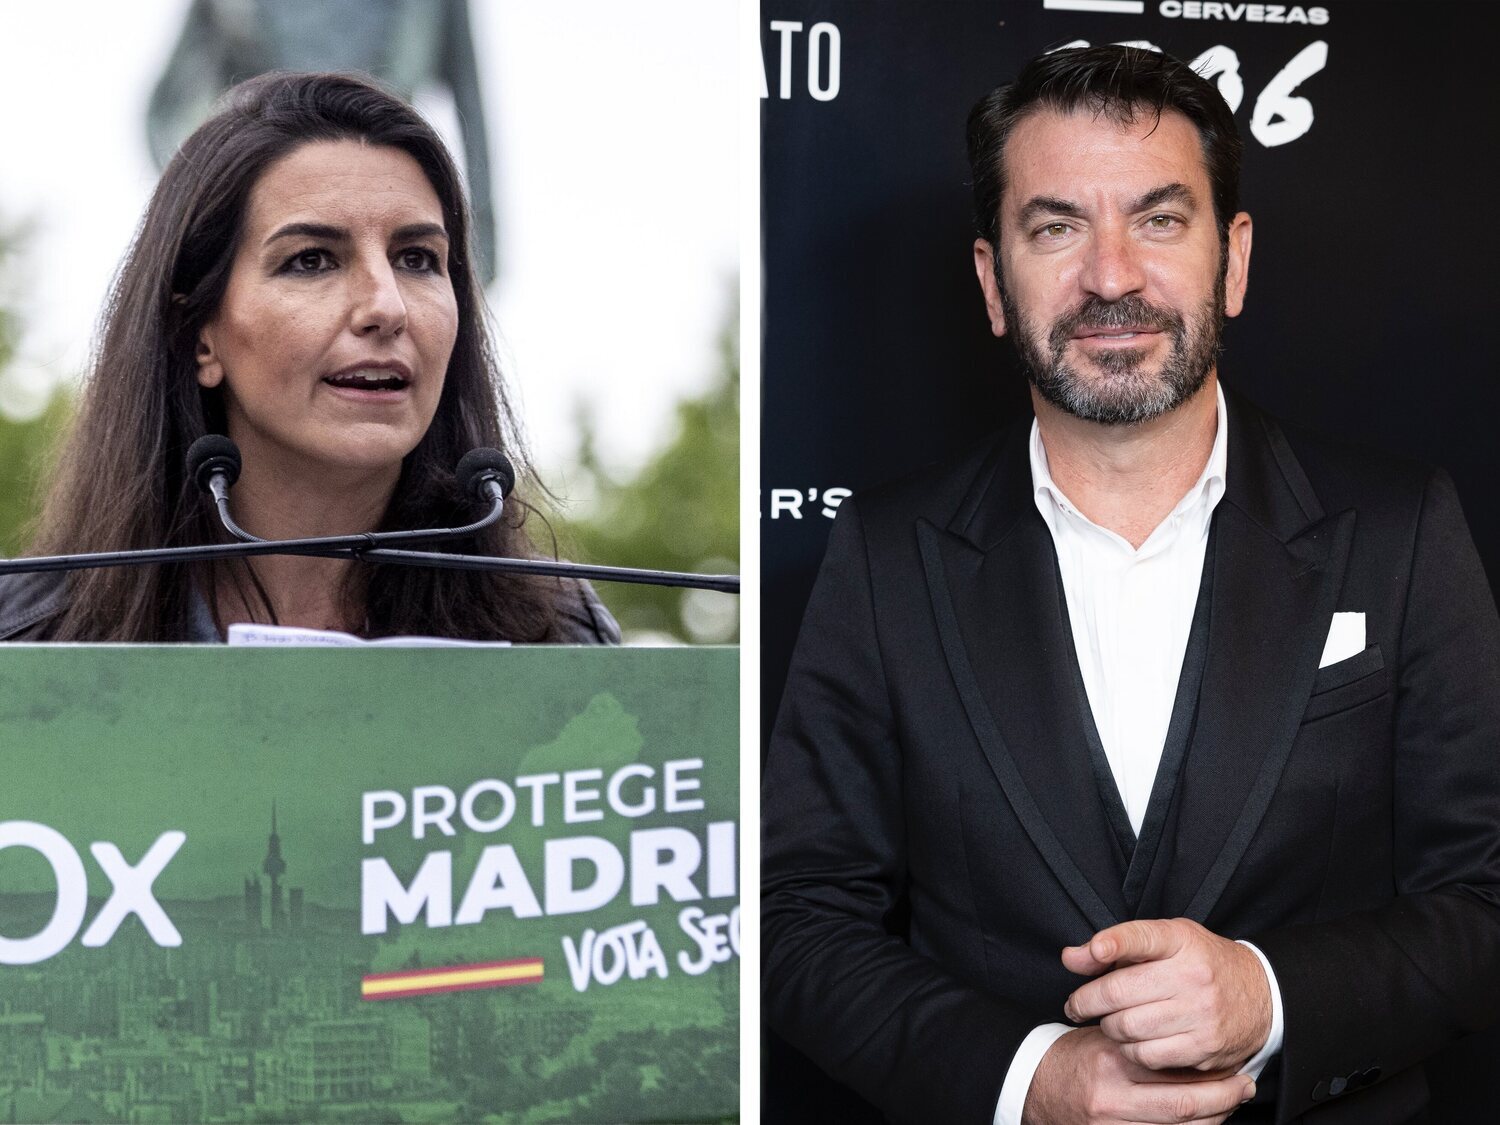 Rocío Monasterio, líder de VOX en Madrid, condenada por la obra ilegal en la casa de Arturo Valls